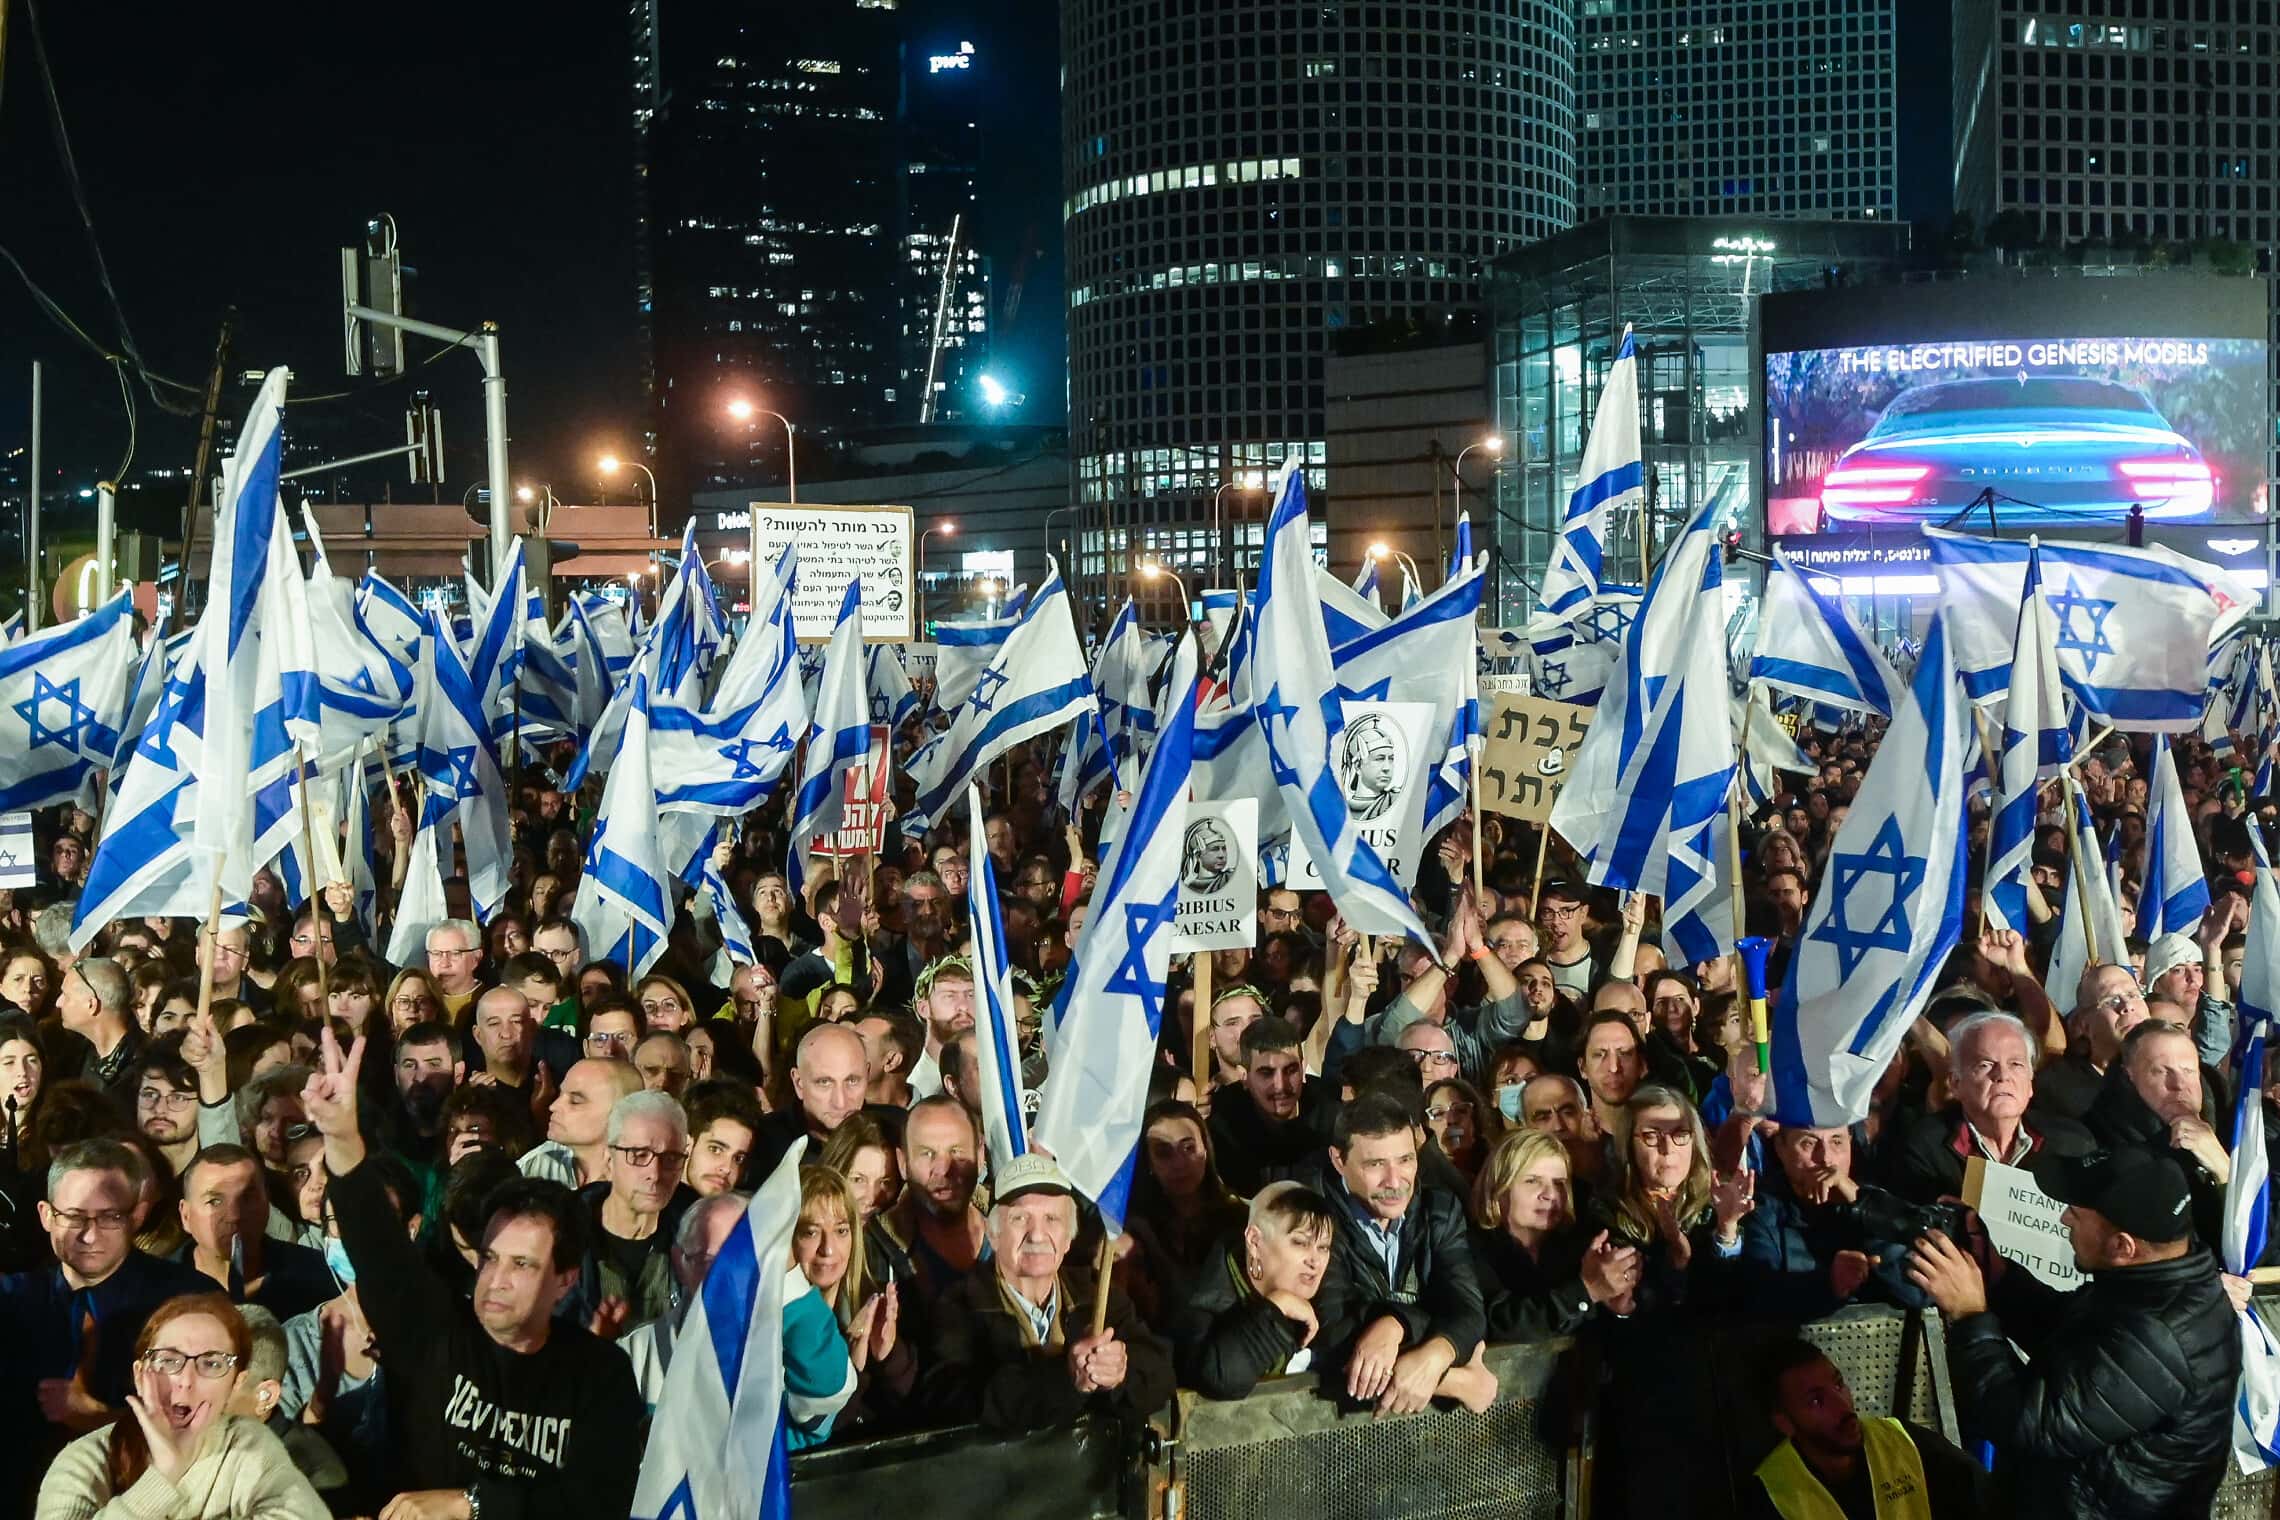 הפגנה נגד החלשת מערכת המשפט. תל אביב, 21 בינואר 2023 (צילום: Avshalom Sassoni/Flash90)